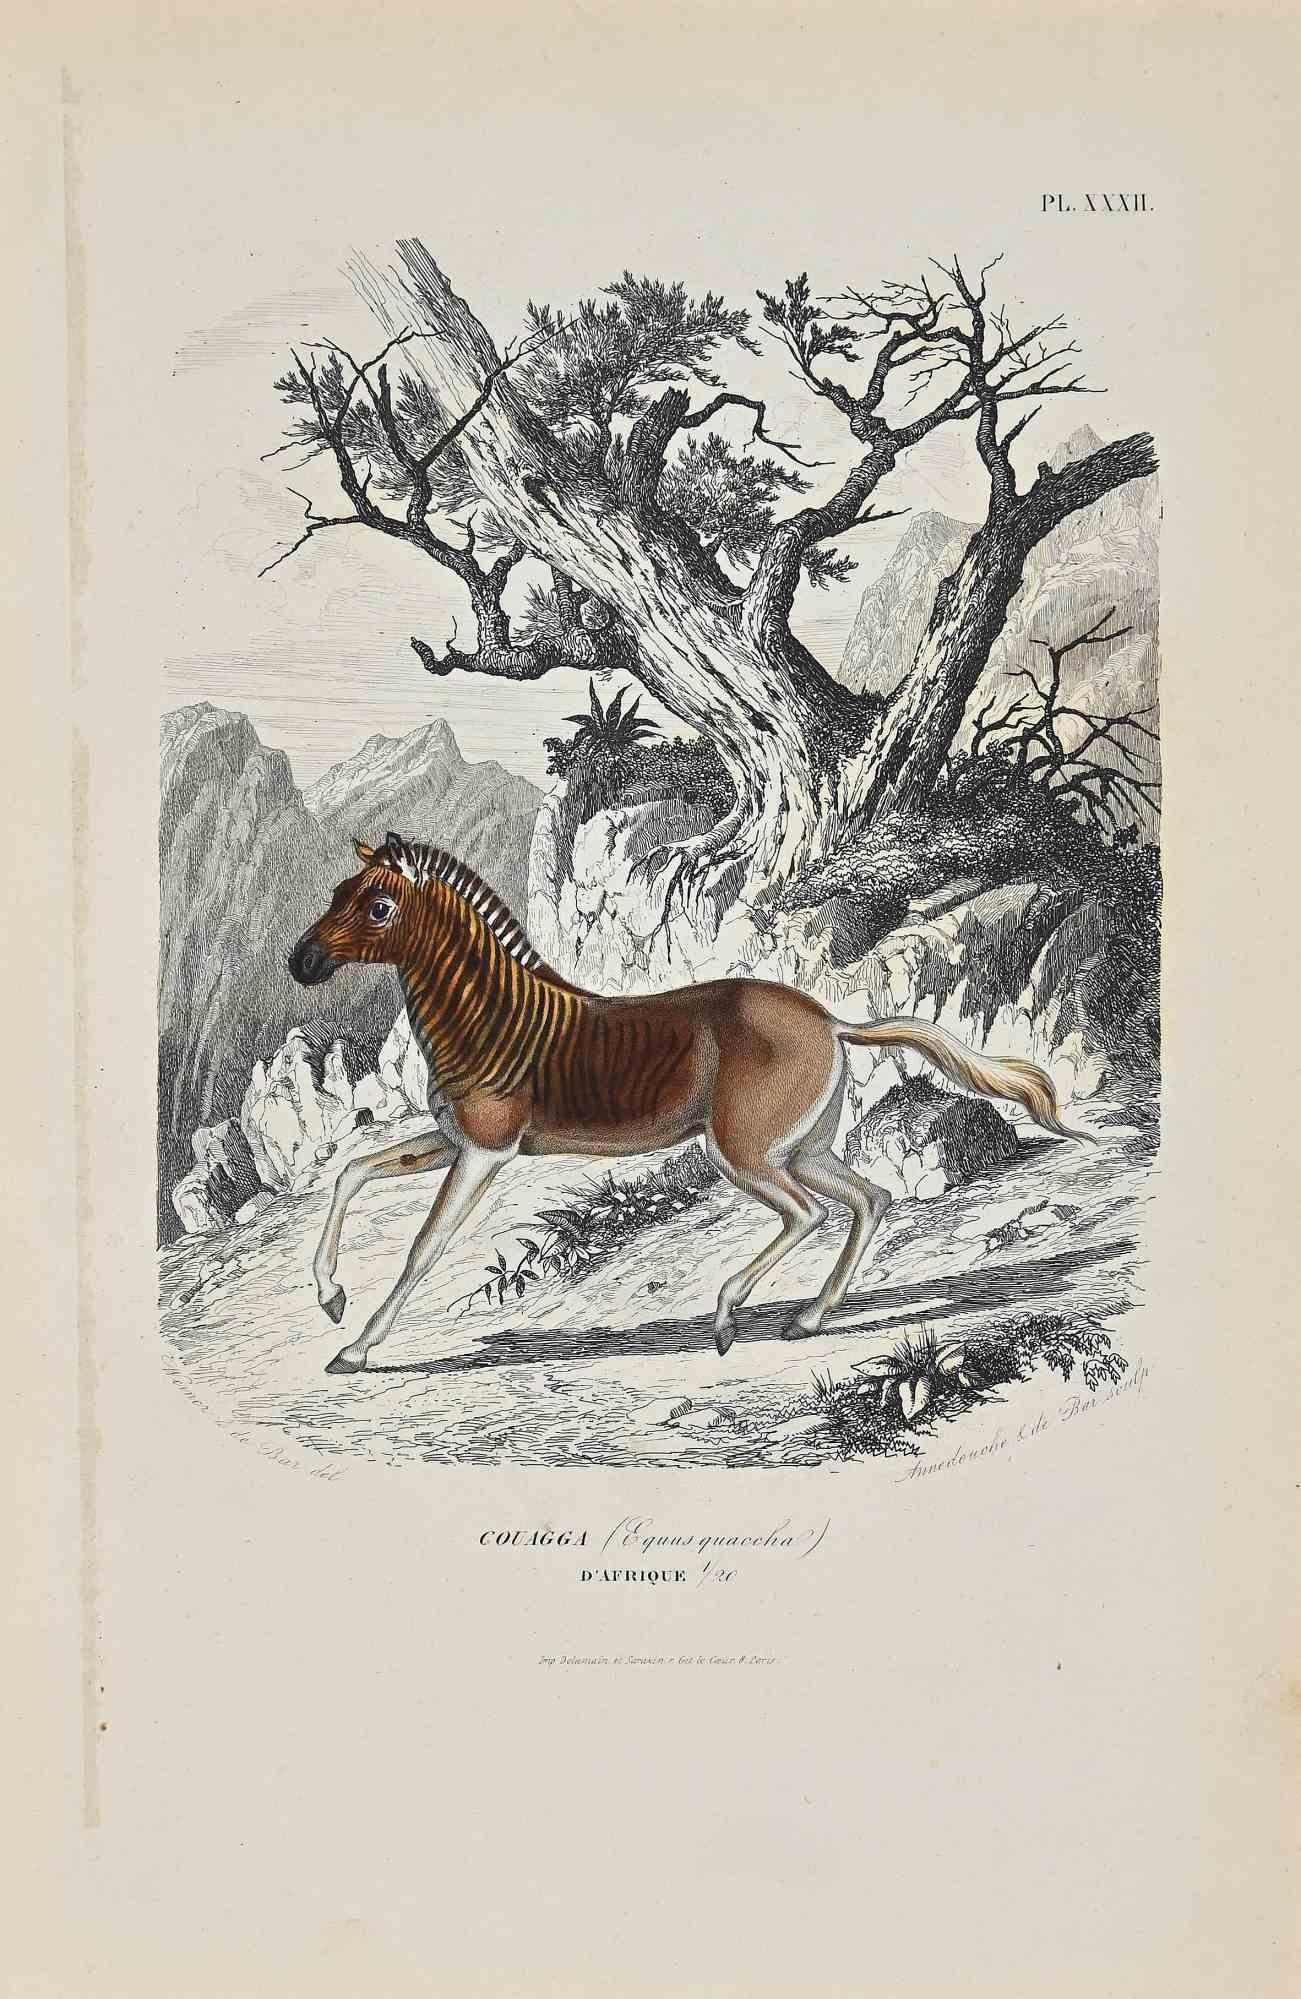 African Couagga ist eine Originallithografie auf elfenbeinfarbenem Papier, die von Paul Gervais (1816-1879) geschaffen wurde. Das Kunstwerk stammt aus der Serie "Les Trois Règnes de la Nature" und wurde 1854 veröffentlicht.

Guter Zustand bis auf